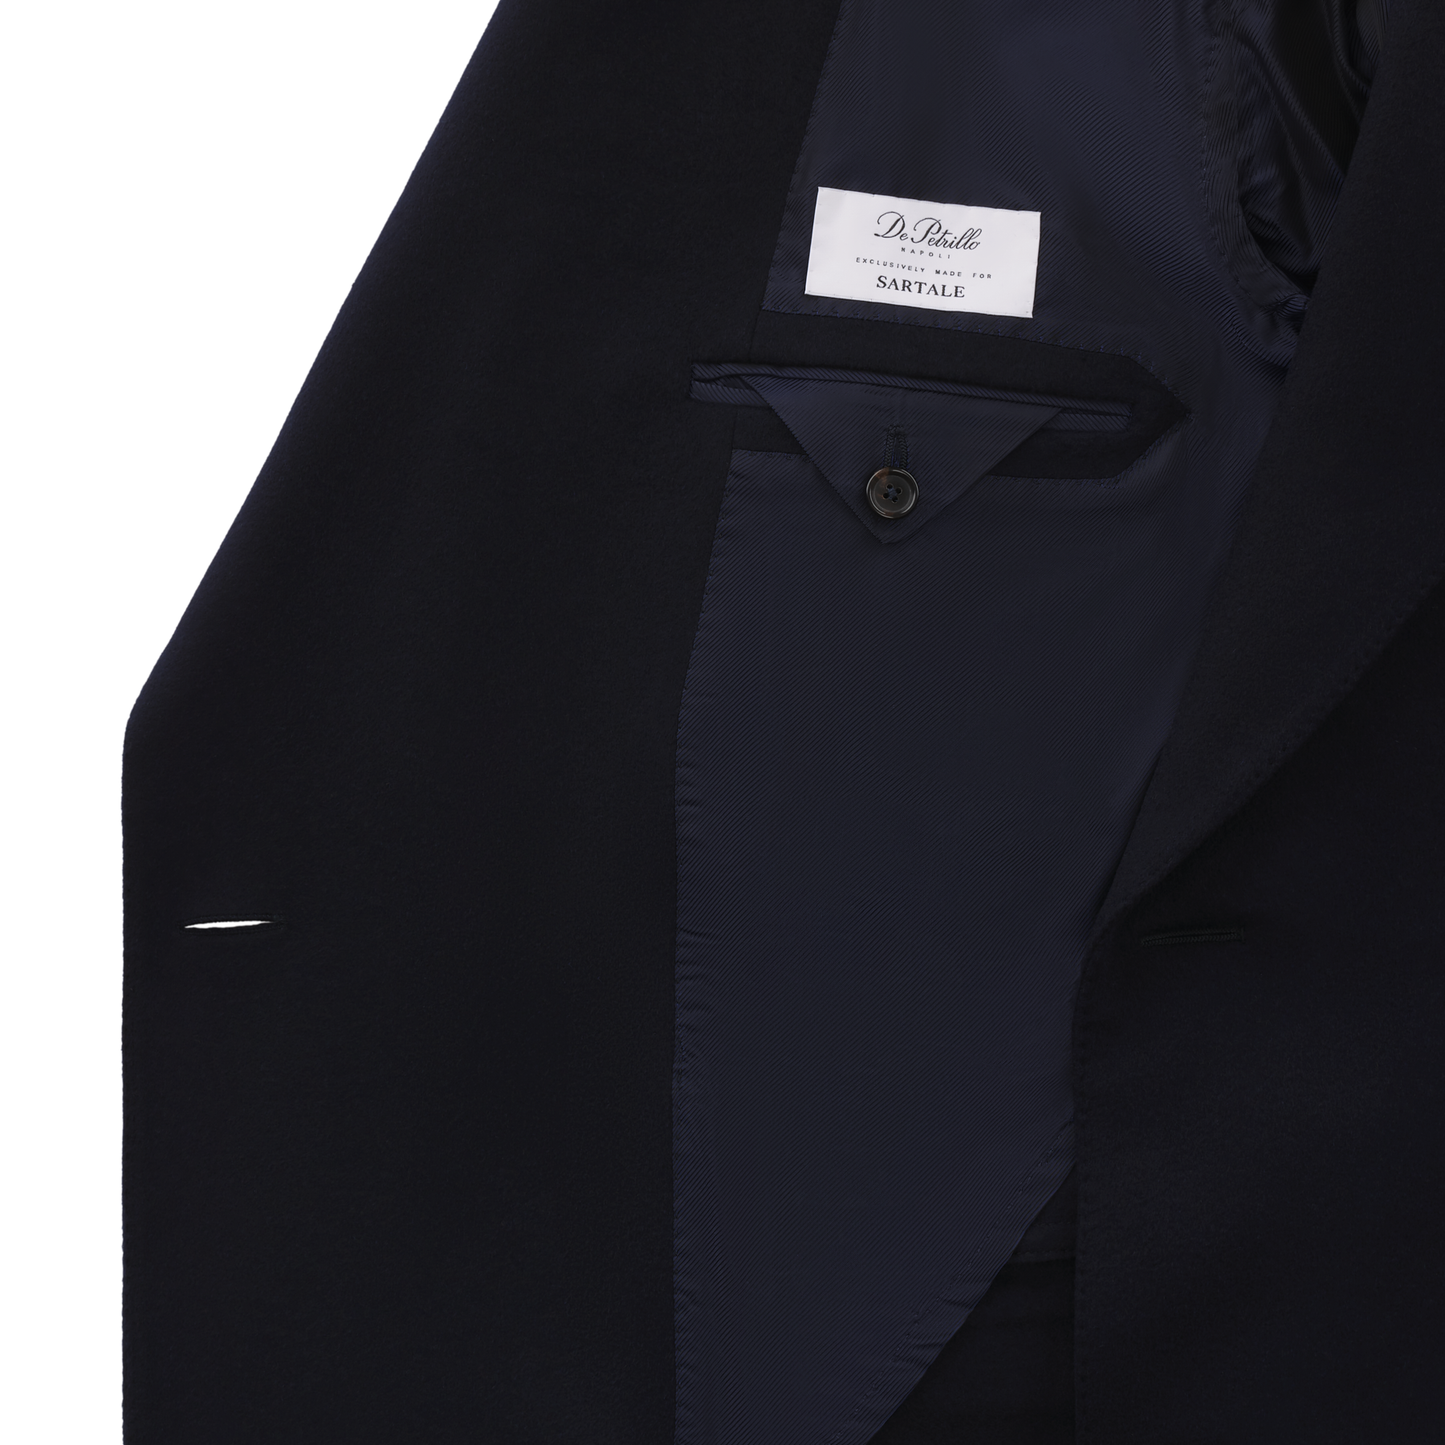 De Petrillo Double-Breasted Capotti Cashmere Coat in Dark Blue. Exclusively Made for Sartale - SARTALE